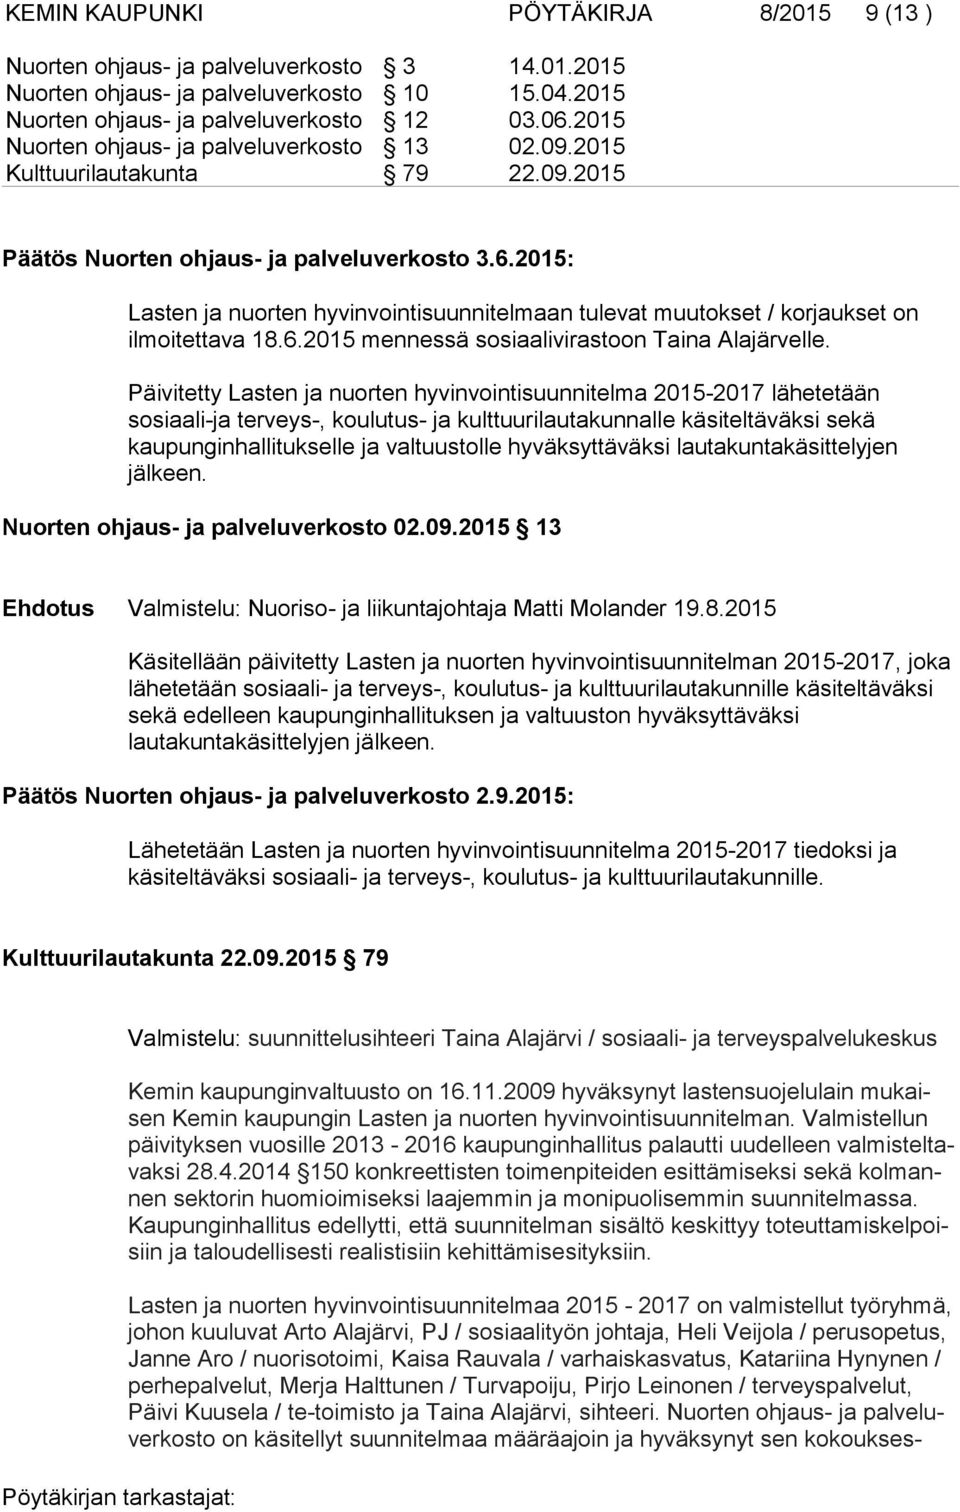 2015: Lasten ja nuorten hyvinvointisuunnitelmaan tulevat muutokset / korjaukset on ilmoitettava 18.6.2015 mennessä sosiaalivirastoon Taina Alajärvelle.